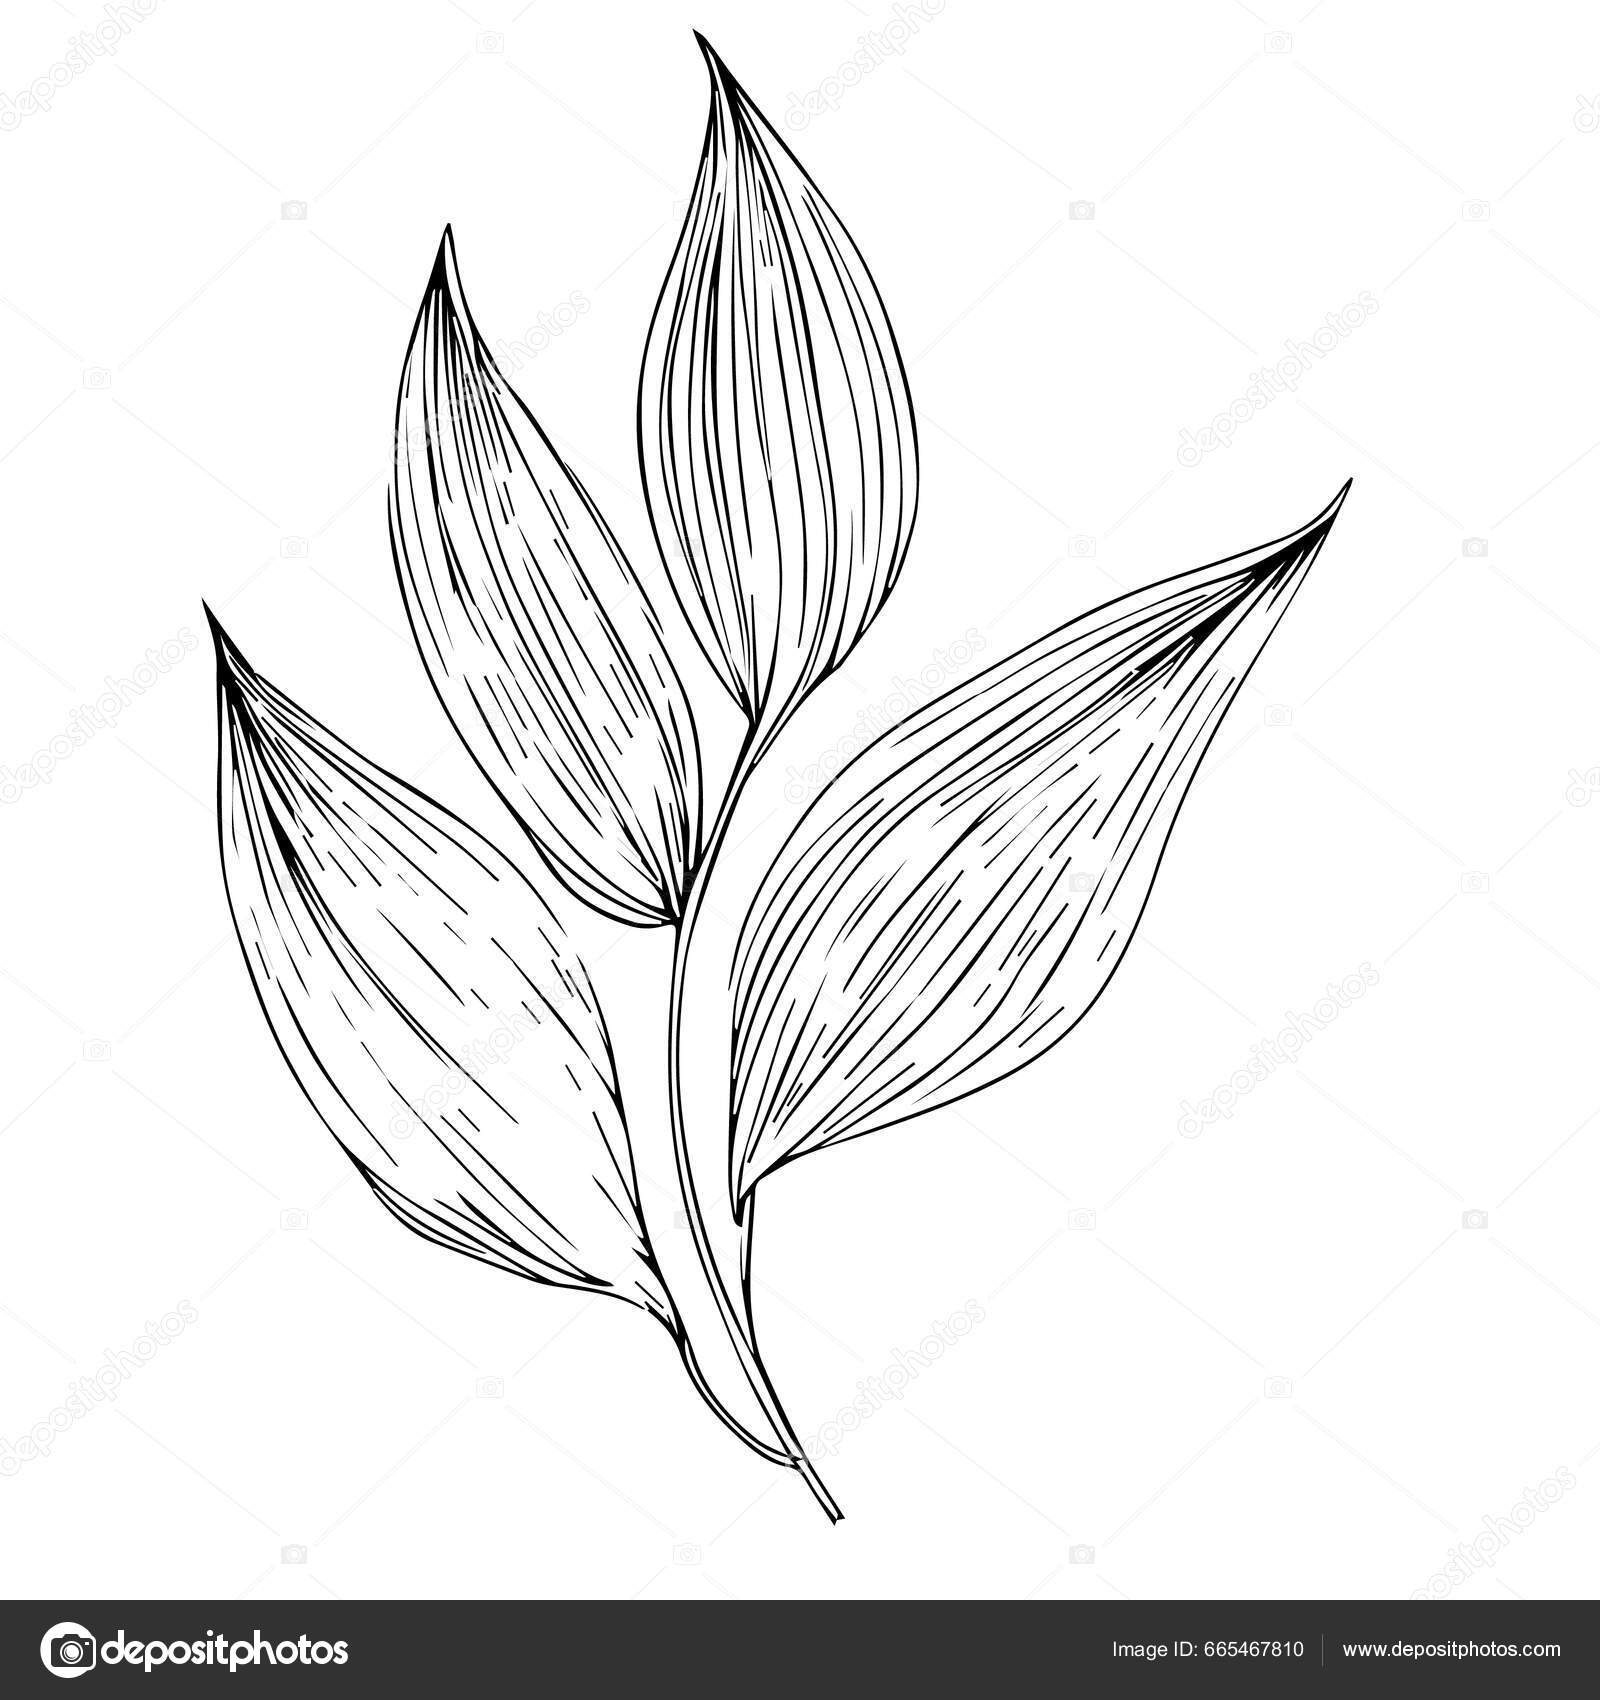 Um simples desenho preto e branco de uma flor.